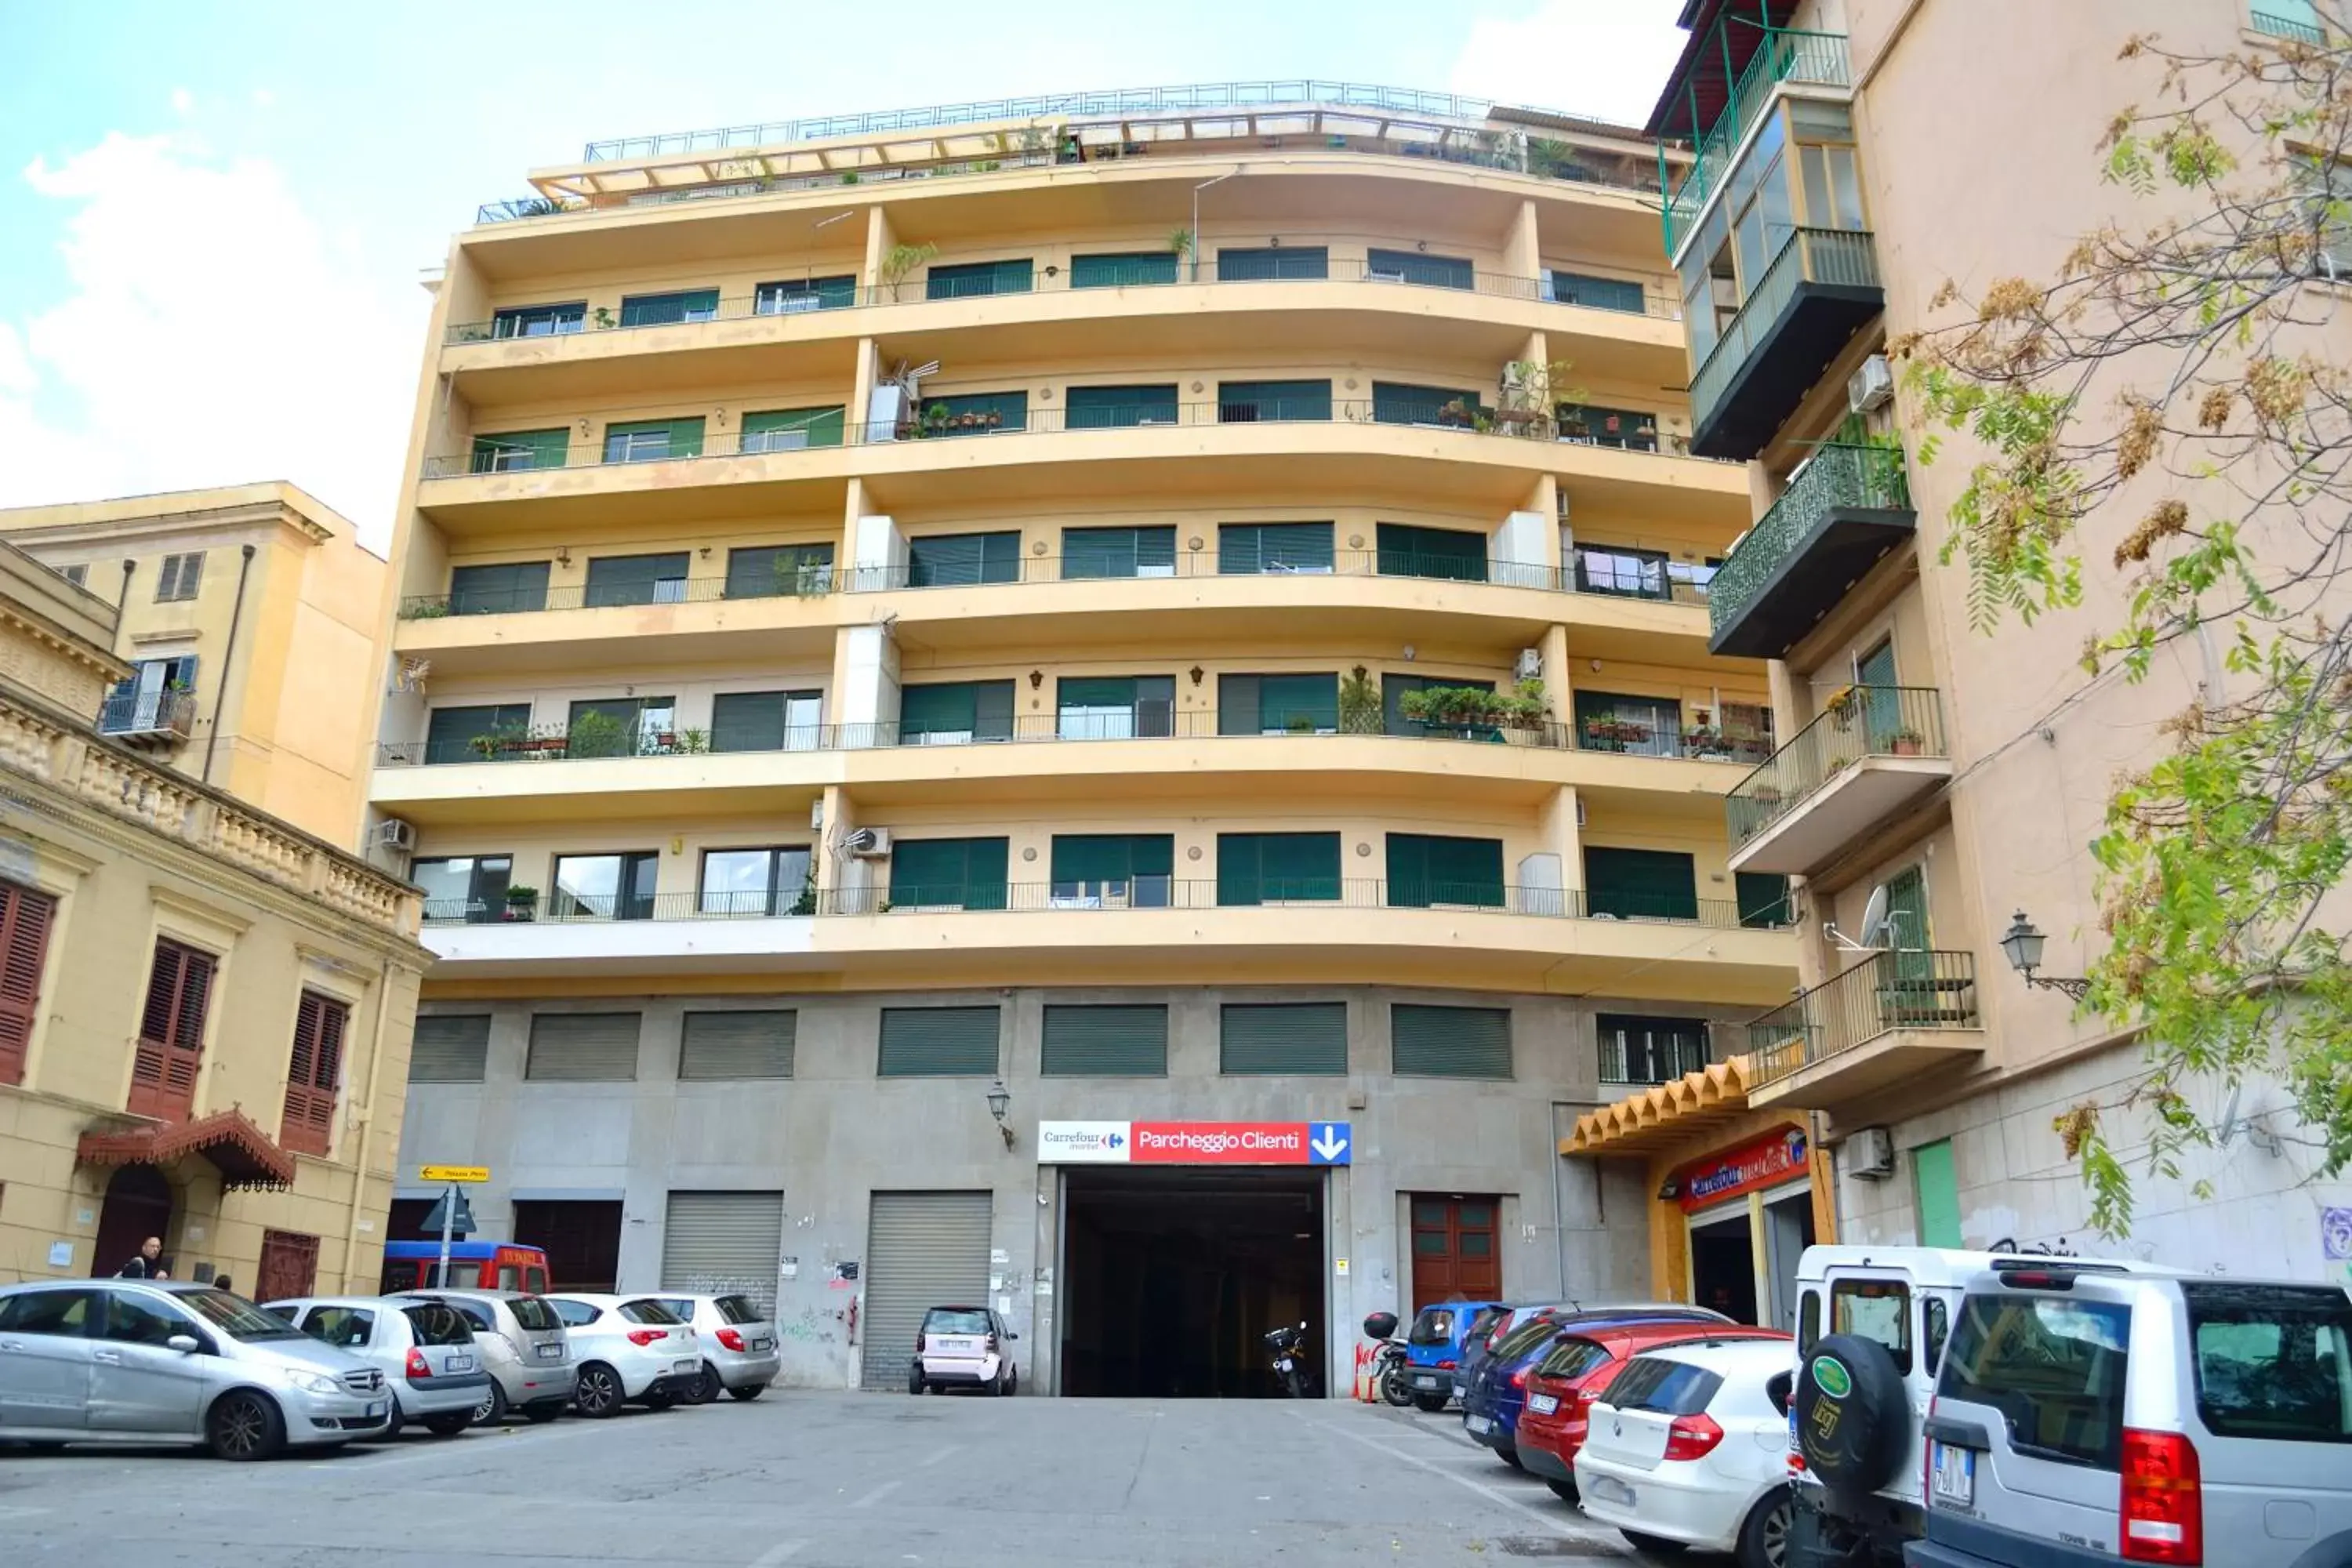 Facade/entrance, Property Building in Piazza Marina